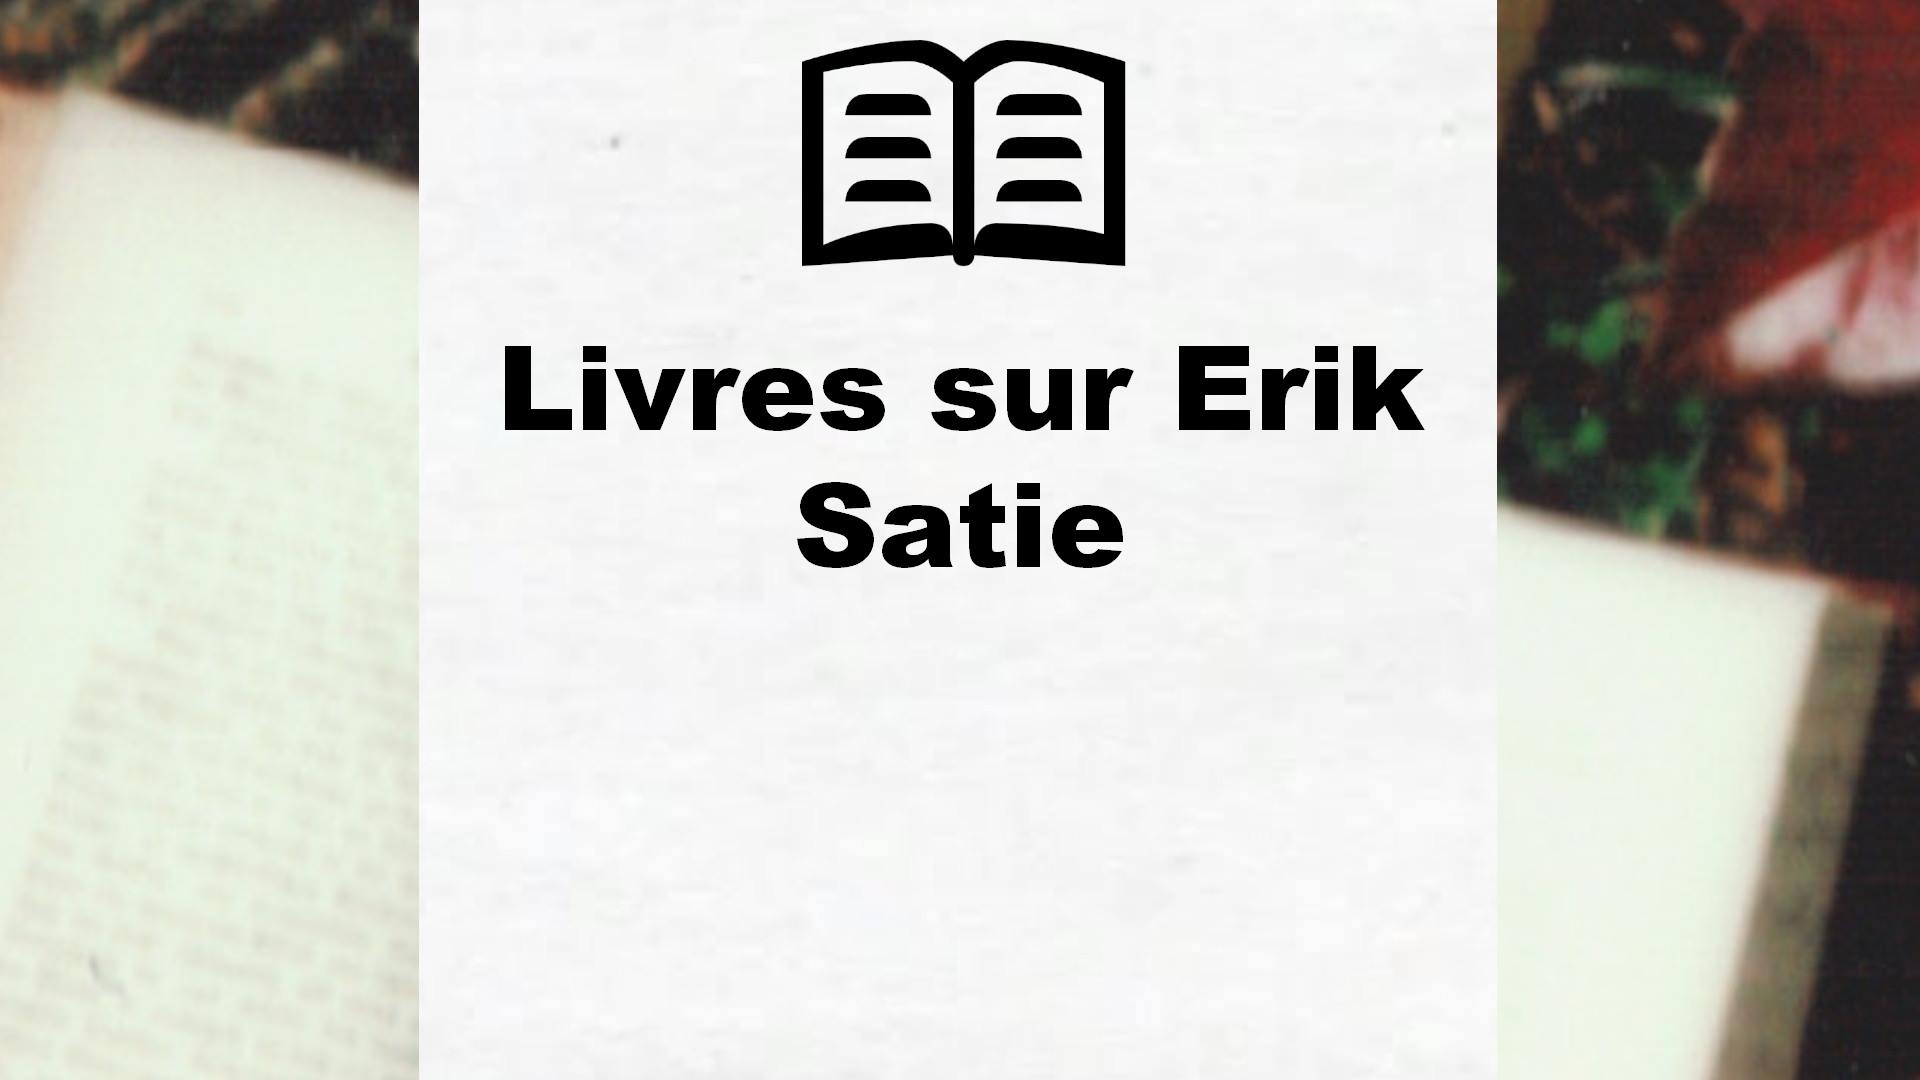 Livres sur Erik Satie